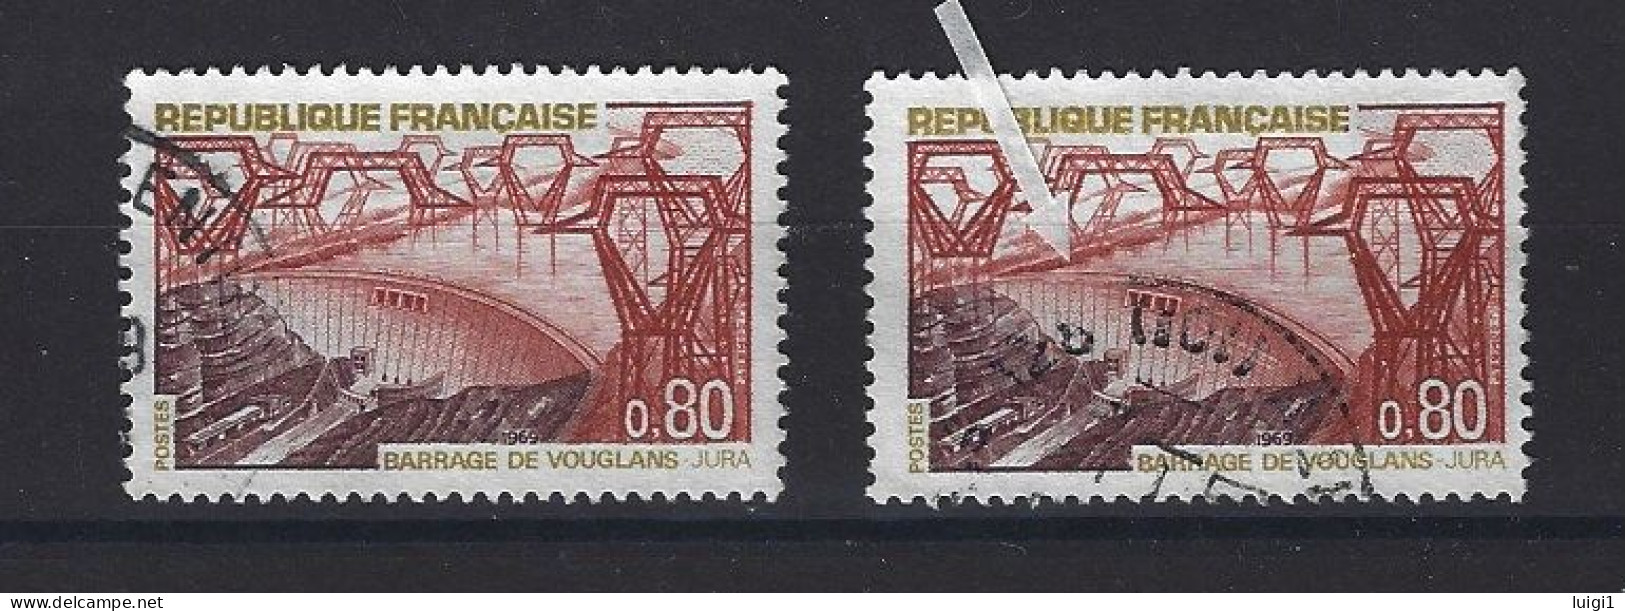 FRANCE 1969 - Y&T N°1583 + N°1583b . 80 C. Barrage De Vouglans. - Variété : Normal + Barrage Rompu. Oblitérés. TB - Oblitérés